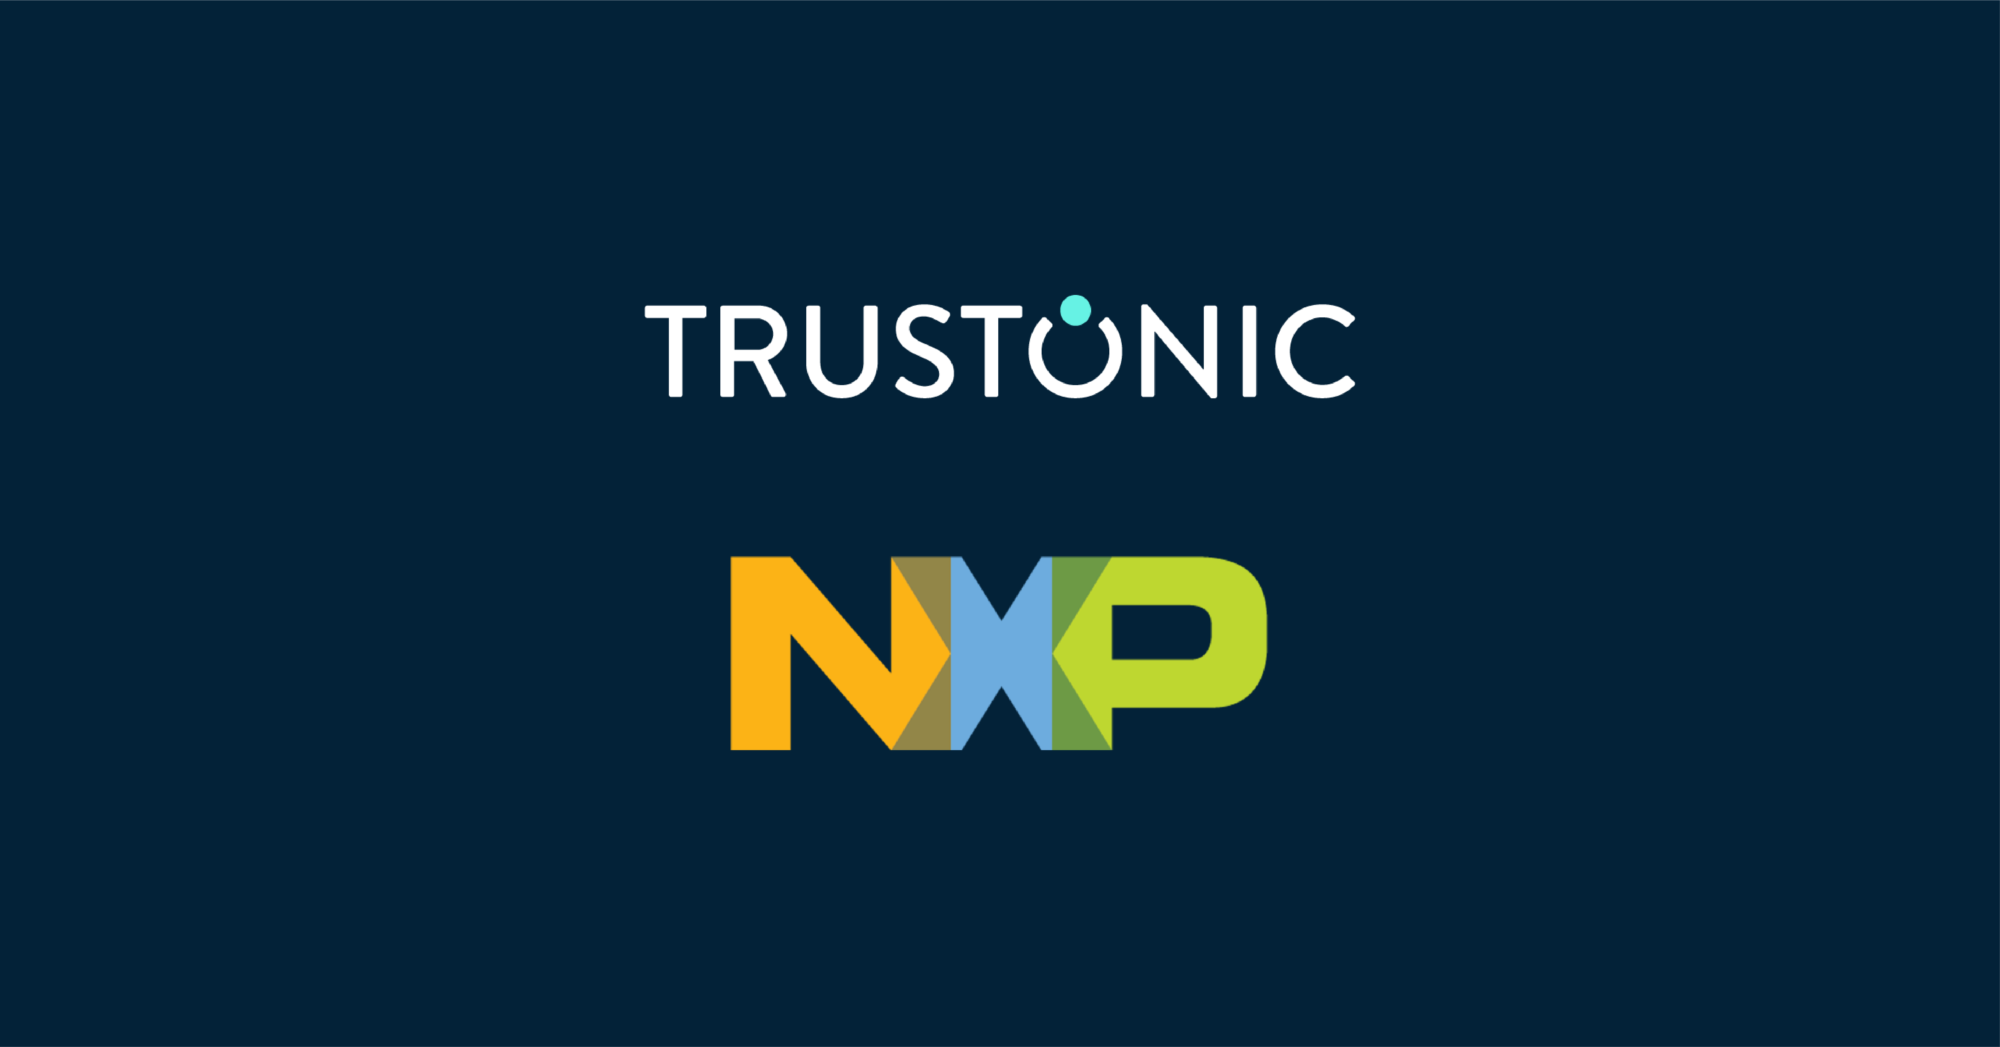 Trustonic 6 NXP logos